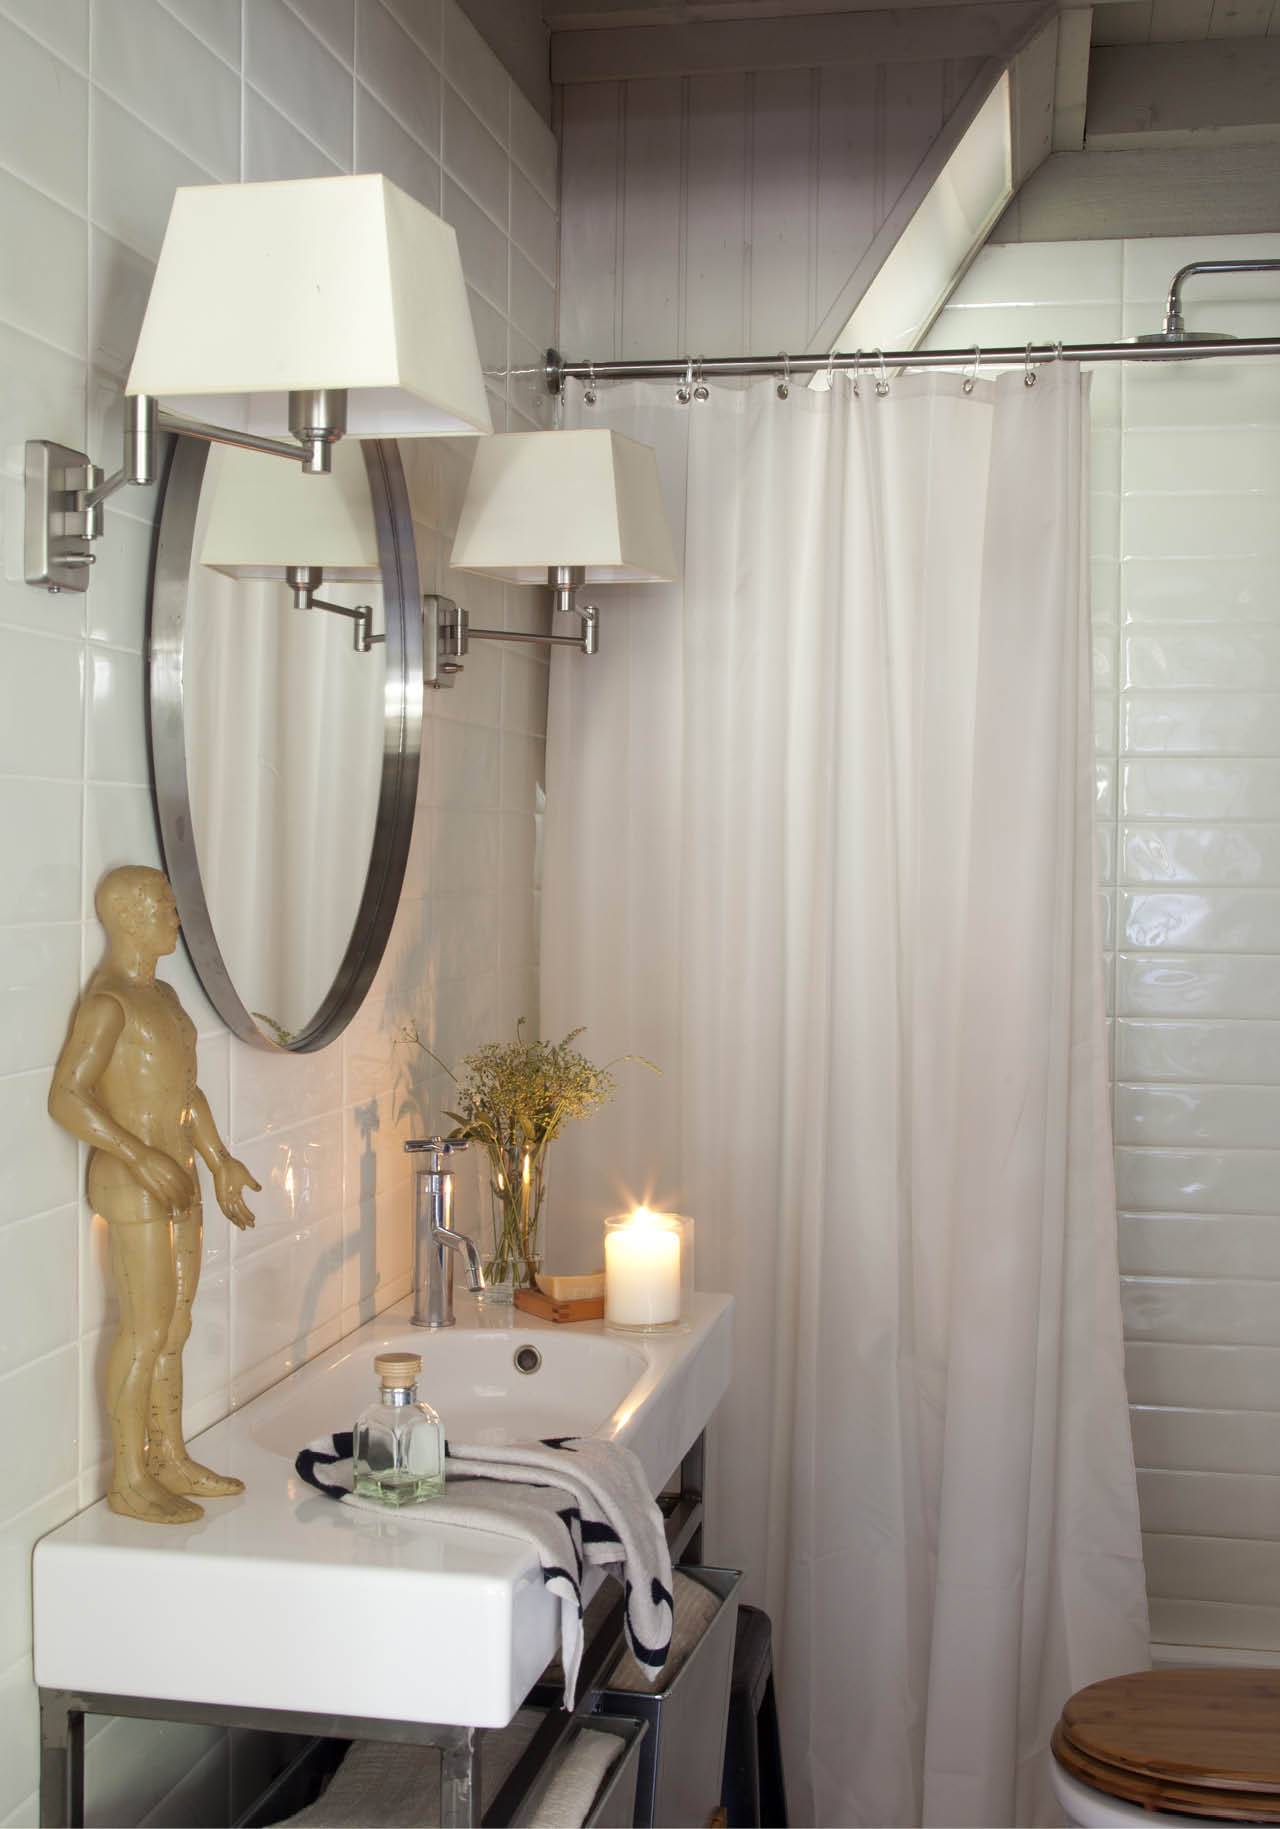 usos bicarbonato sodico limpiar cortina ducha